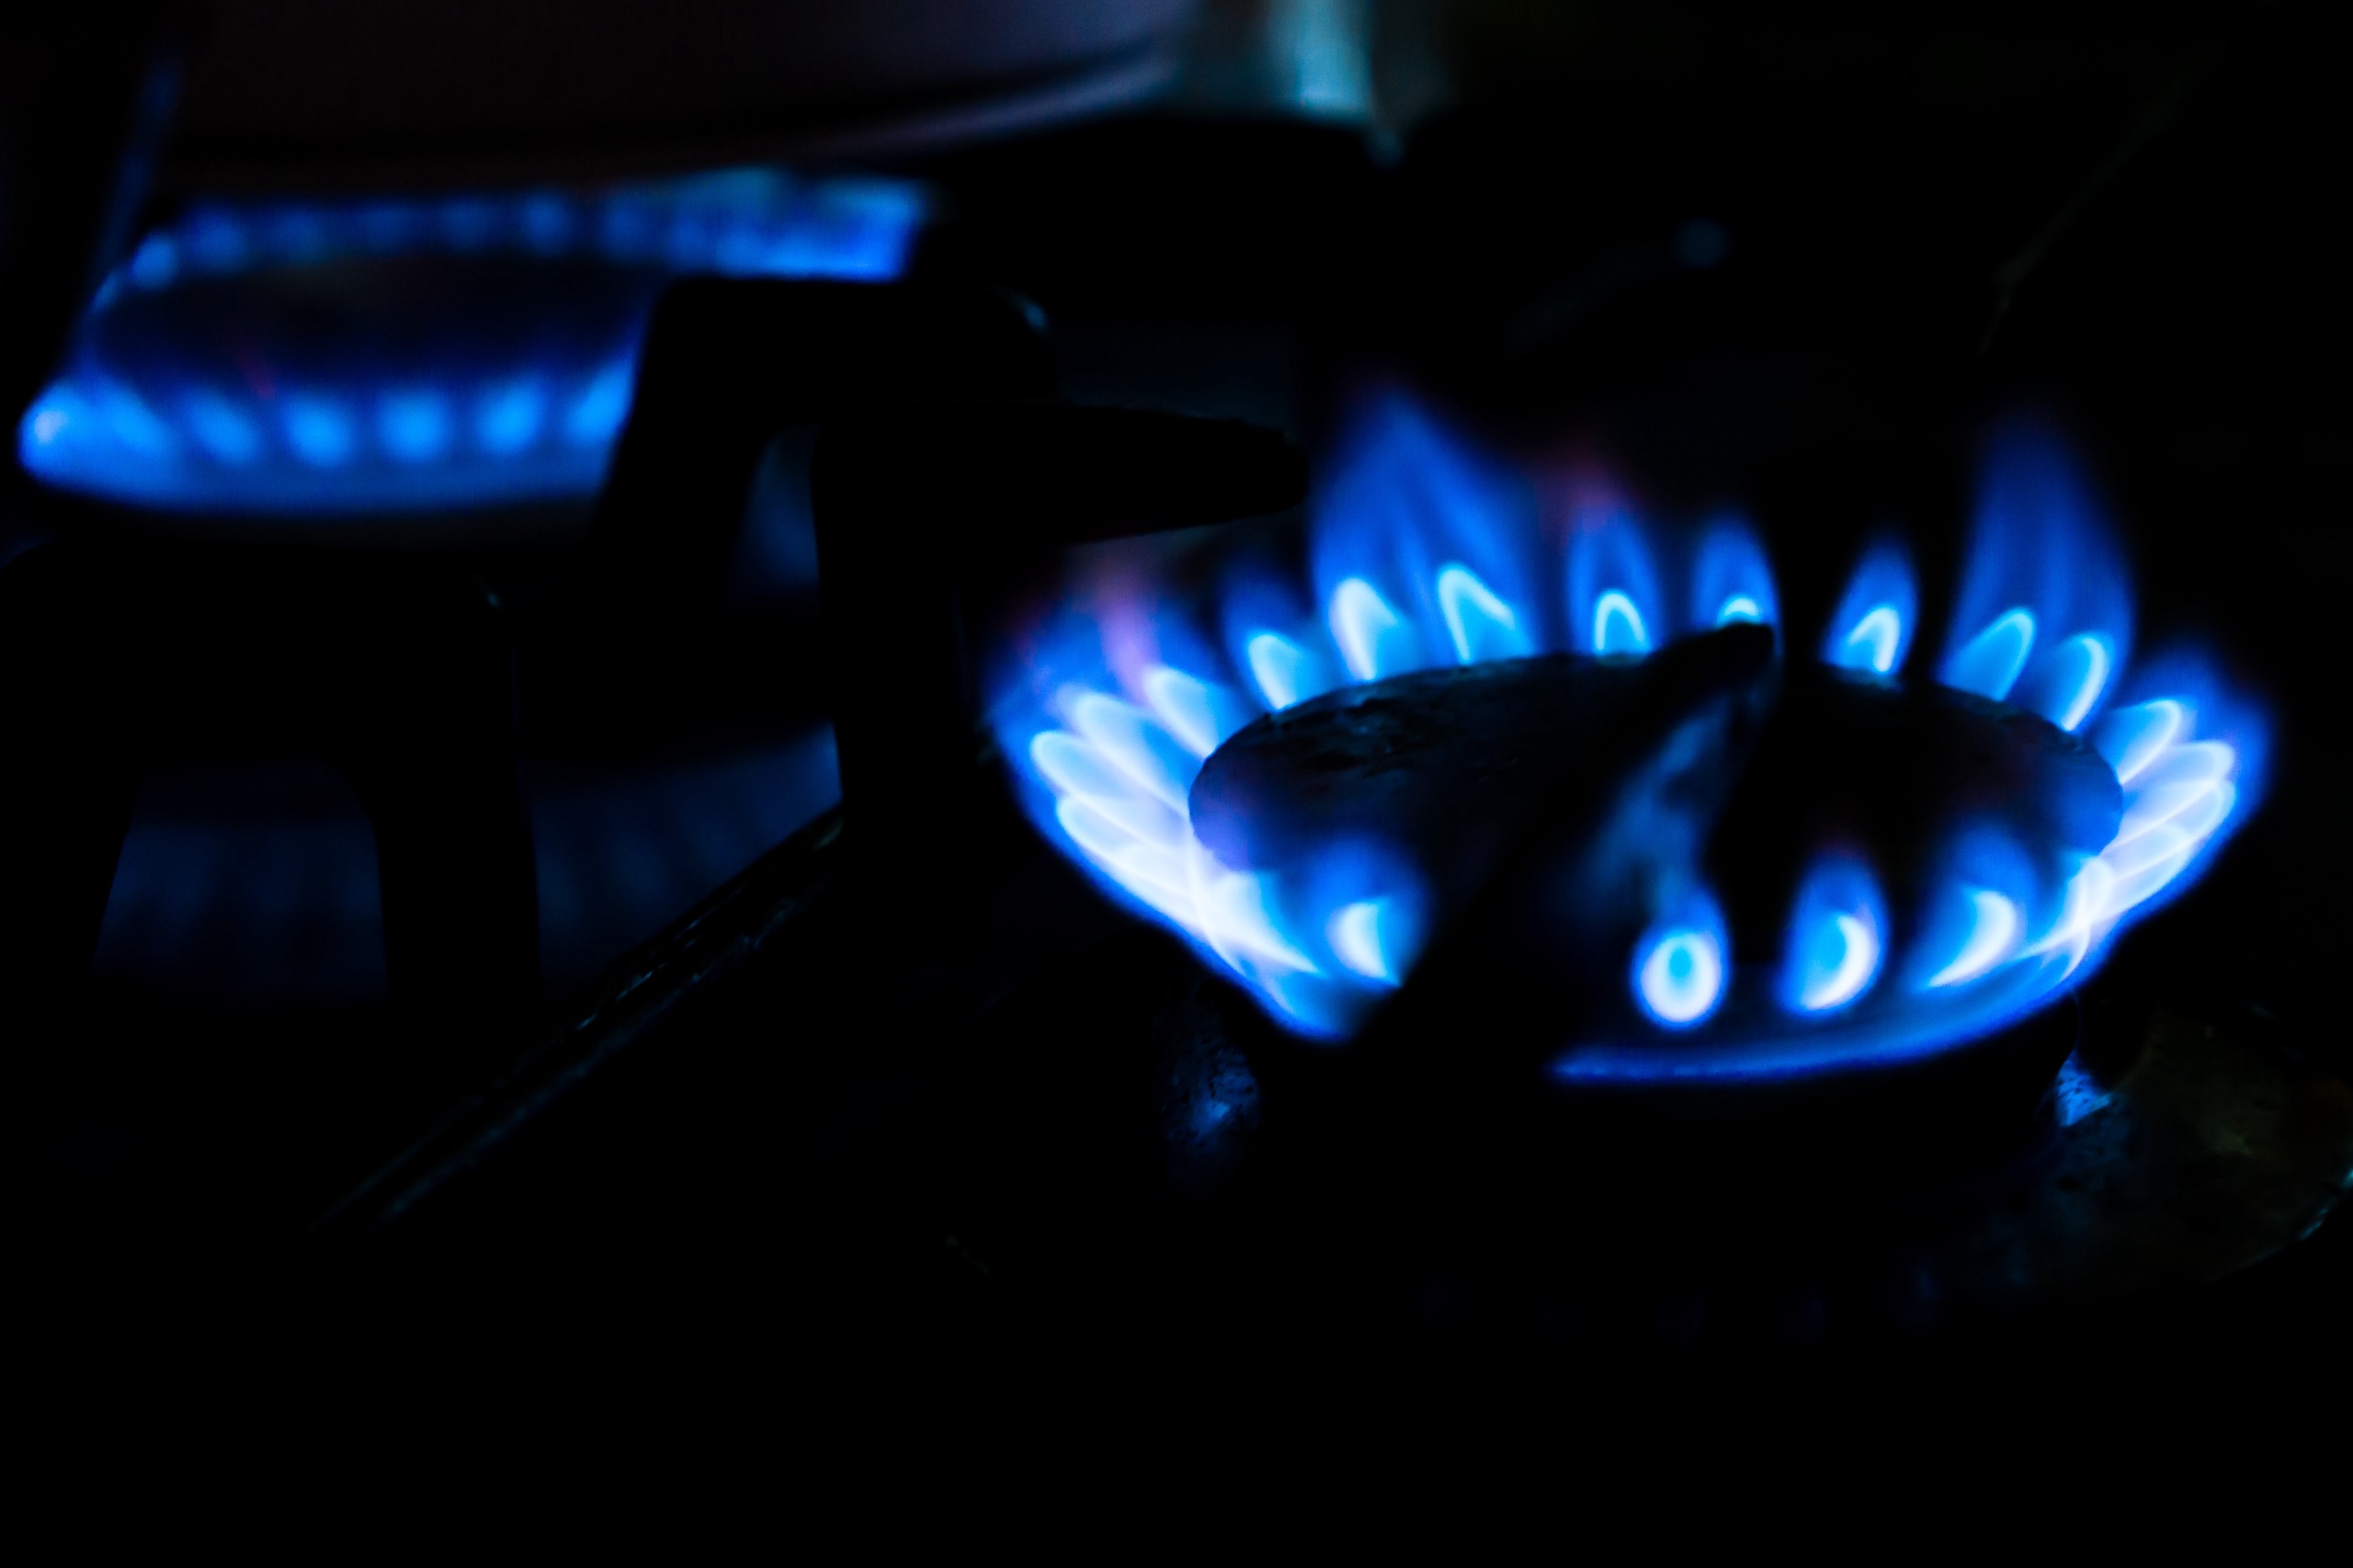 De Europese gasprijs veerde vandaag tot wel 13 procent op, richting de 164 euro per megawattuur. Oorzaak is de verwachting van zeer koud weer in de komende periode, waardoor mensen mogelijk meer gas gaan gebruiken. Toch eindigde de gasprijs uiteindelijk ruim 6 procent lager dan een dag eerder.